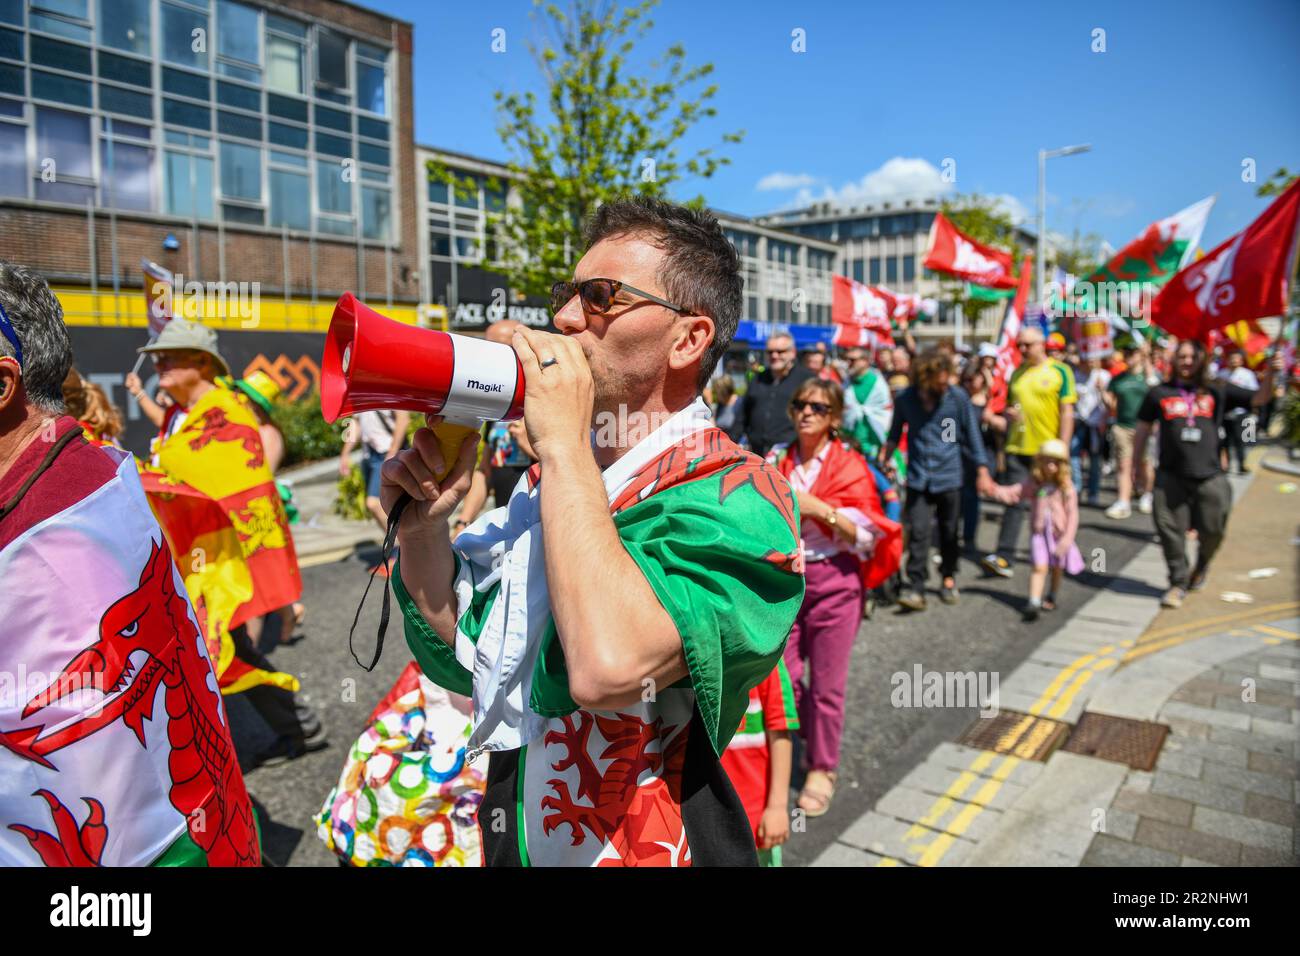 Tausende von Menschen gingen am Samstag auf die Straßen von Swansea, um an einem marsch teilzunehmen, der die walisische Unabhängigkeit forderte. Schätzungsweise 5000 Menschen nahmen an der Veranstaltung in Wales' zweiter Stadt Teil, die von den für die Unabhängigkeit eintretenden Gruppen YES Cymru und AUOB (Alle unter einem Banner) Cymru organisiert wurde. Stockfoto